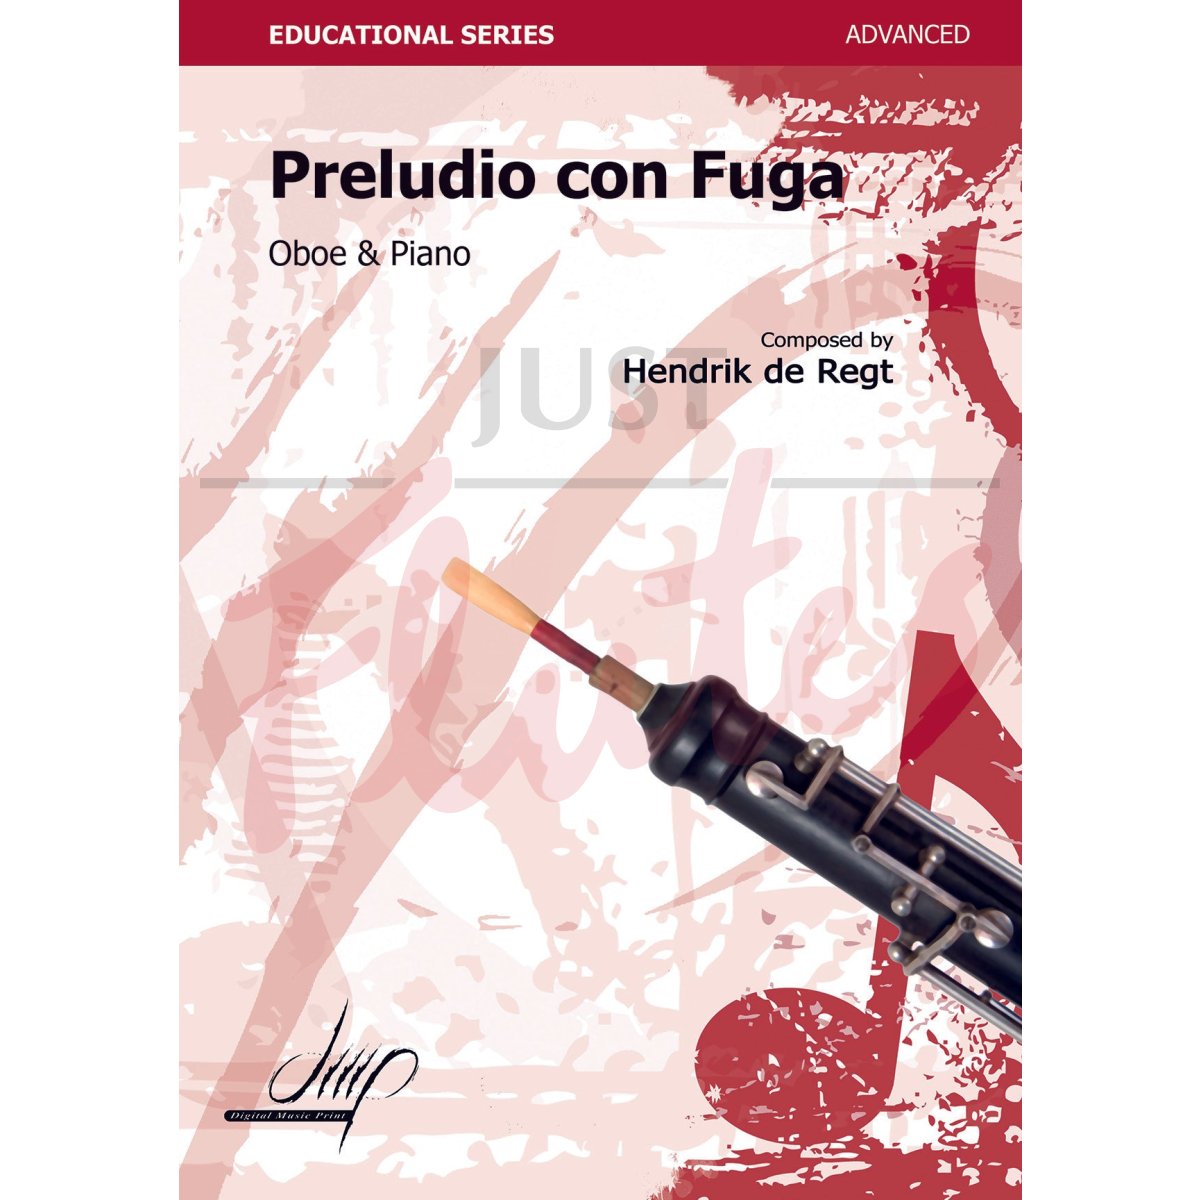 Preludio con Fuga for Oboe and Piano